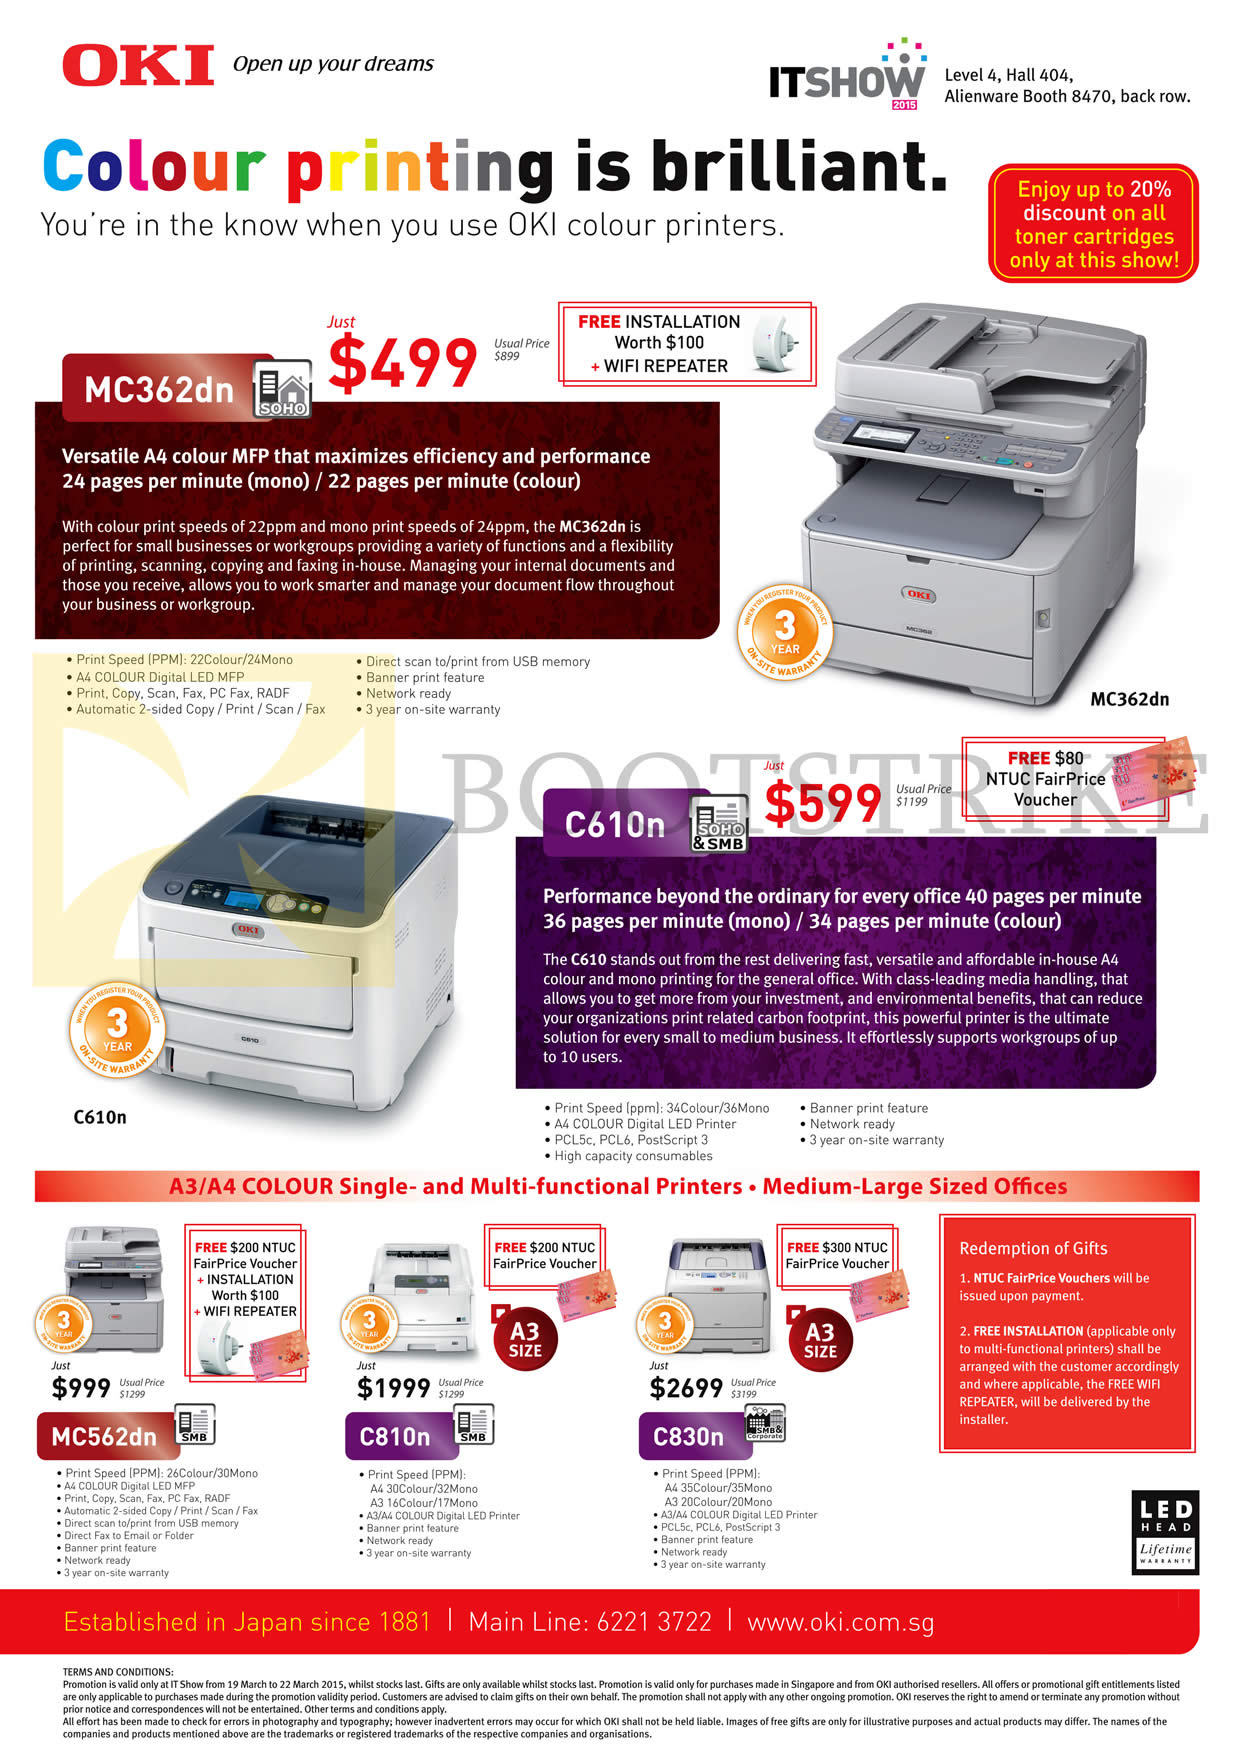 IT SHOW 2015 price list image brochure of GamePro OKI Printers Digital LED MC362dn, C610n, MC562dn, C810n, C830n